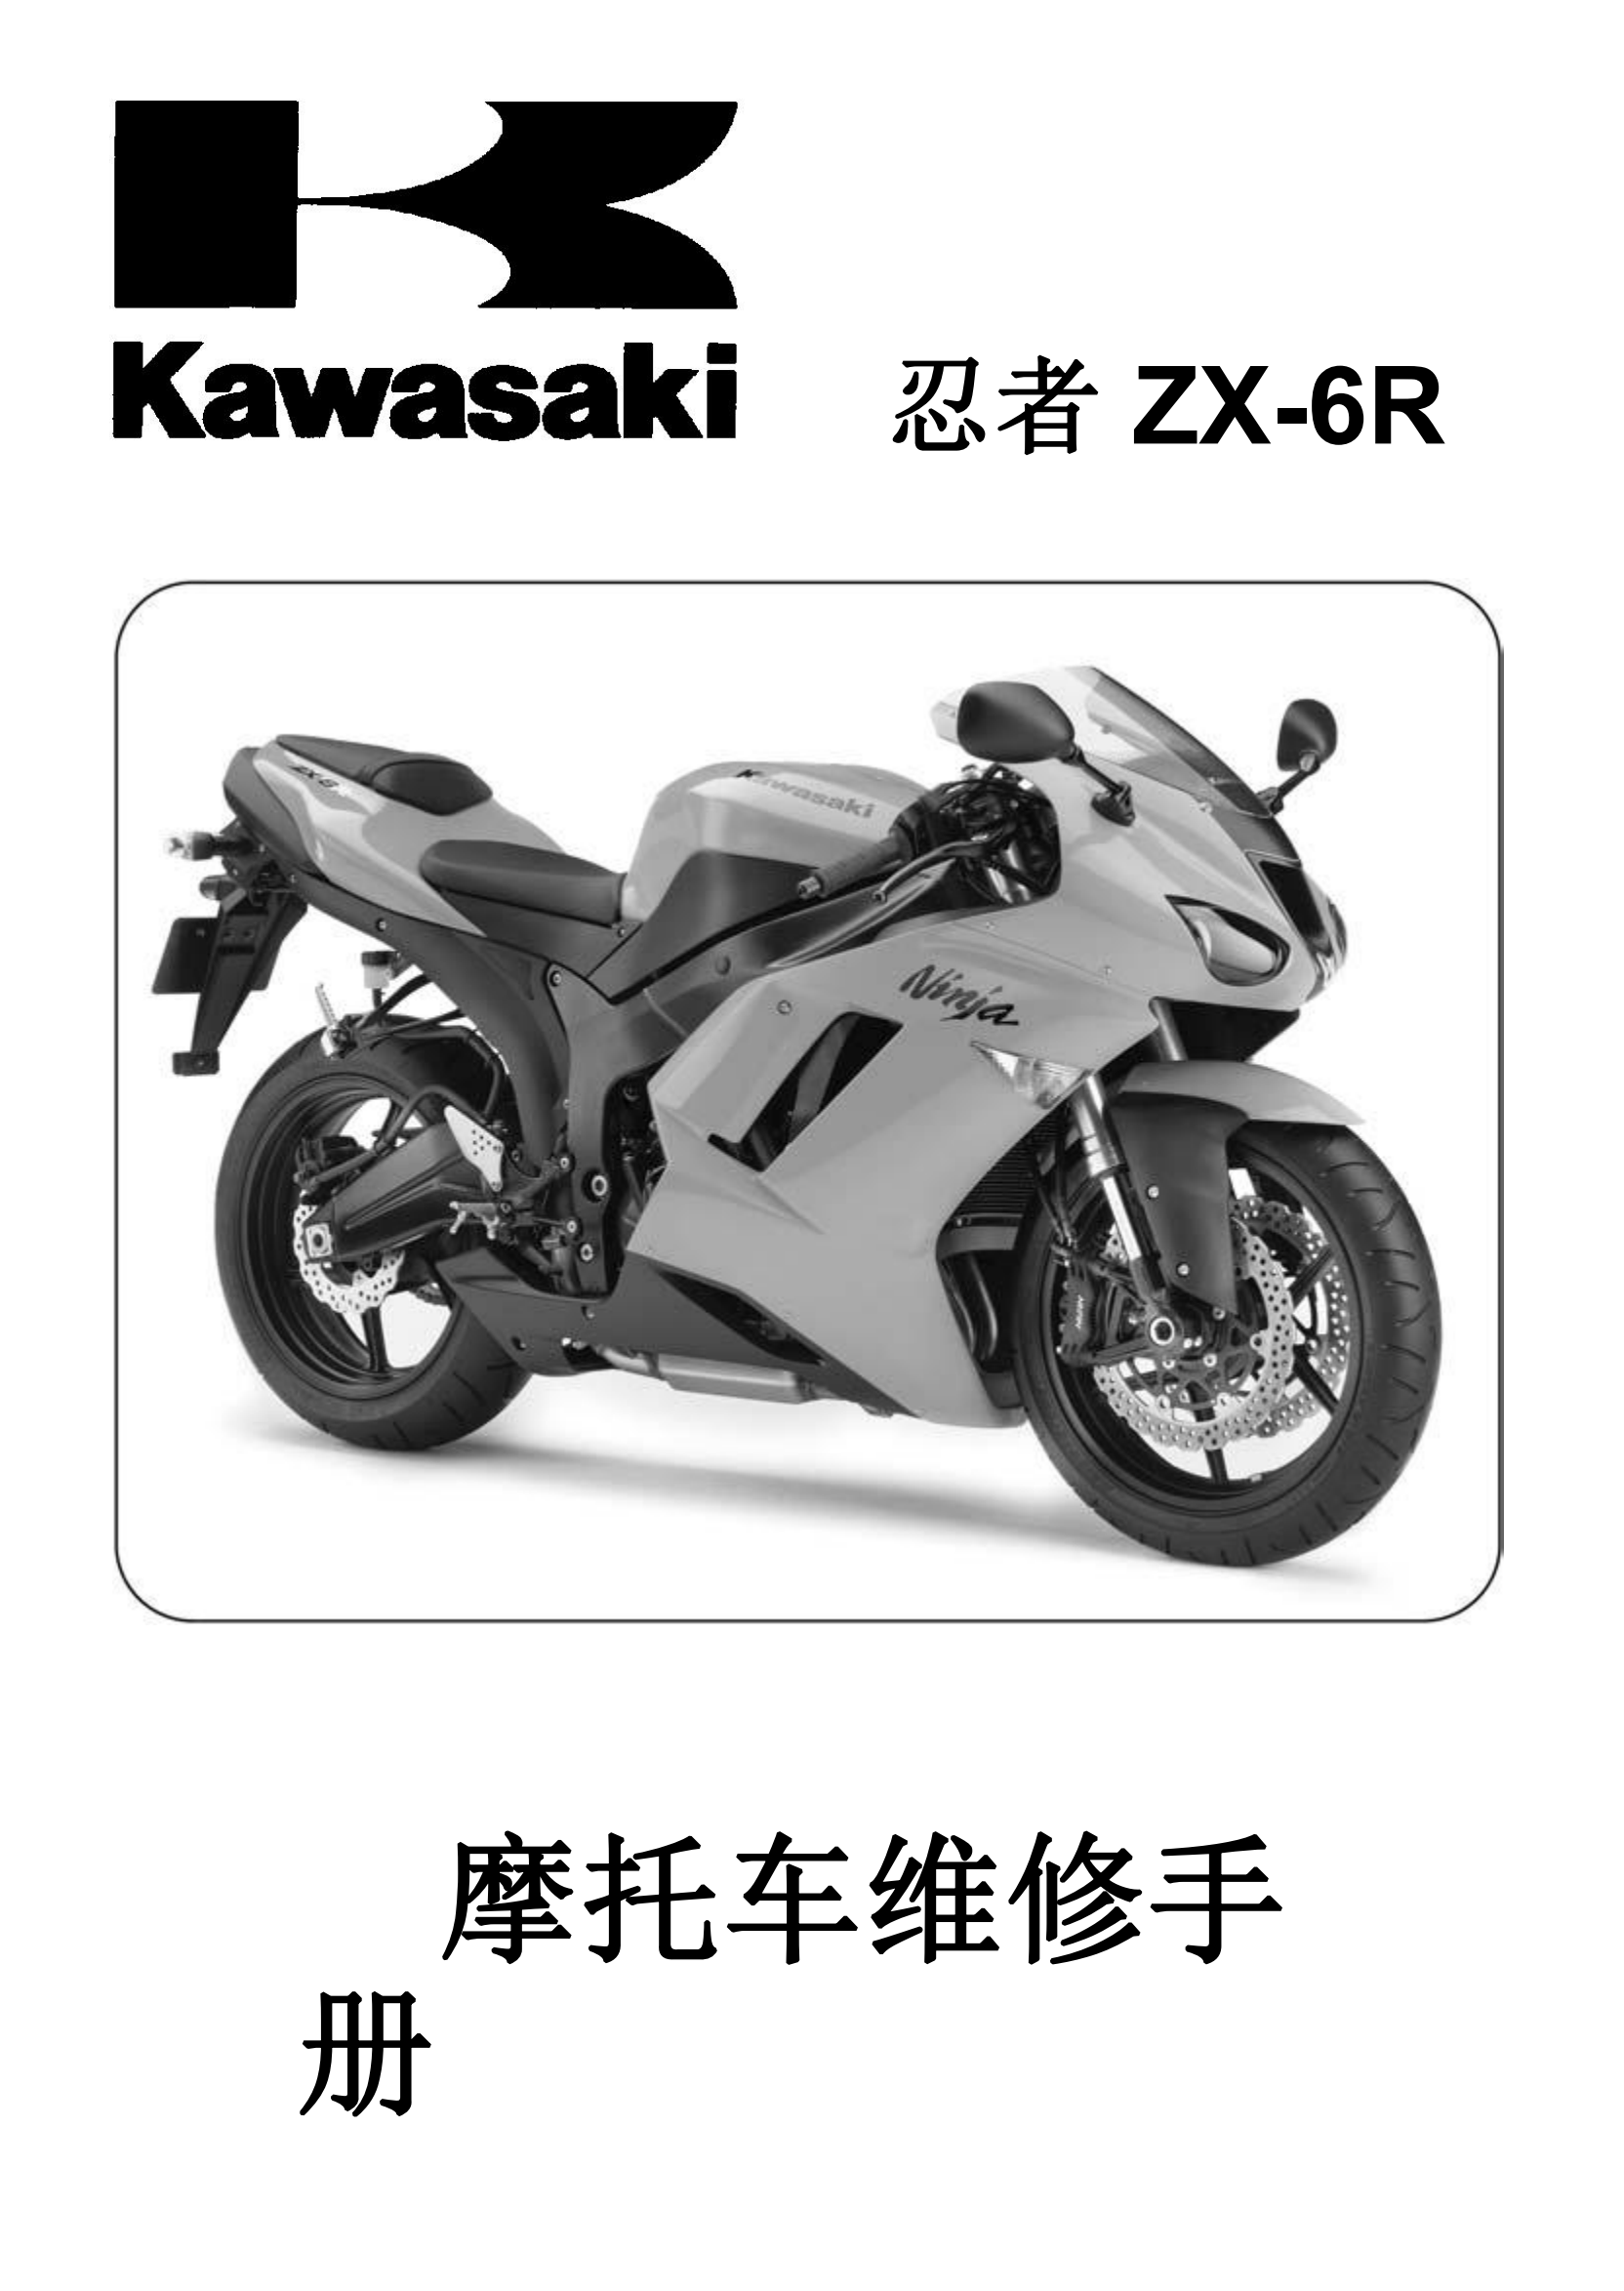 简体中文2007-2008年川崎ninja zx6r kawasaki ninja zx6r 维修手册插图